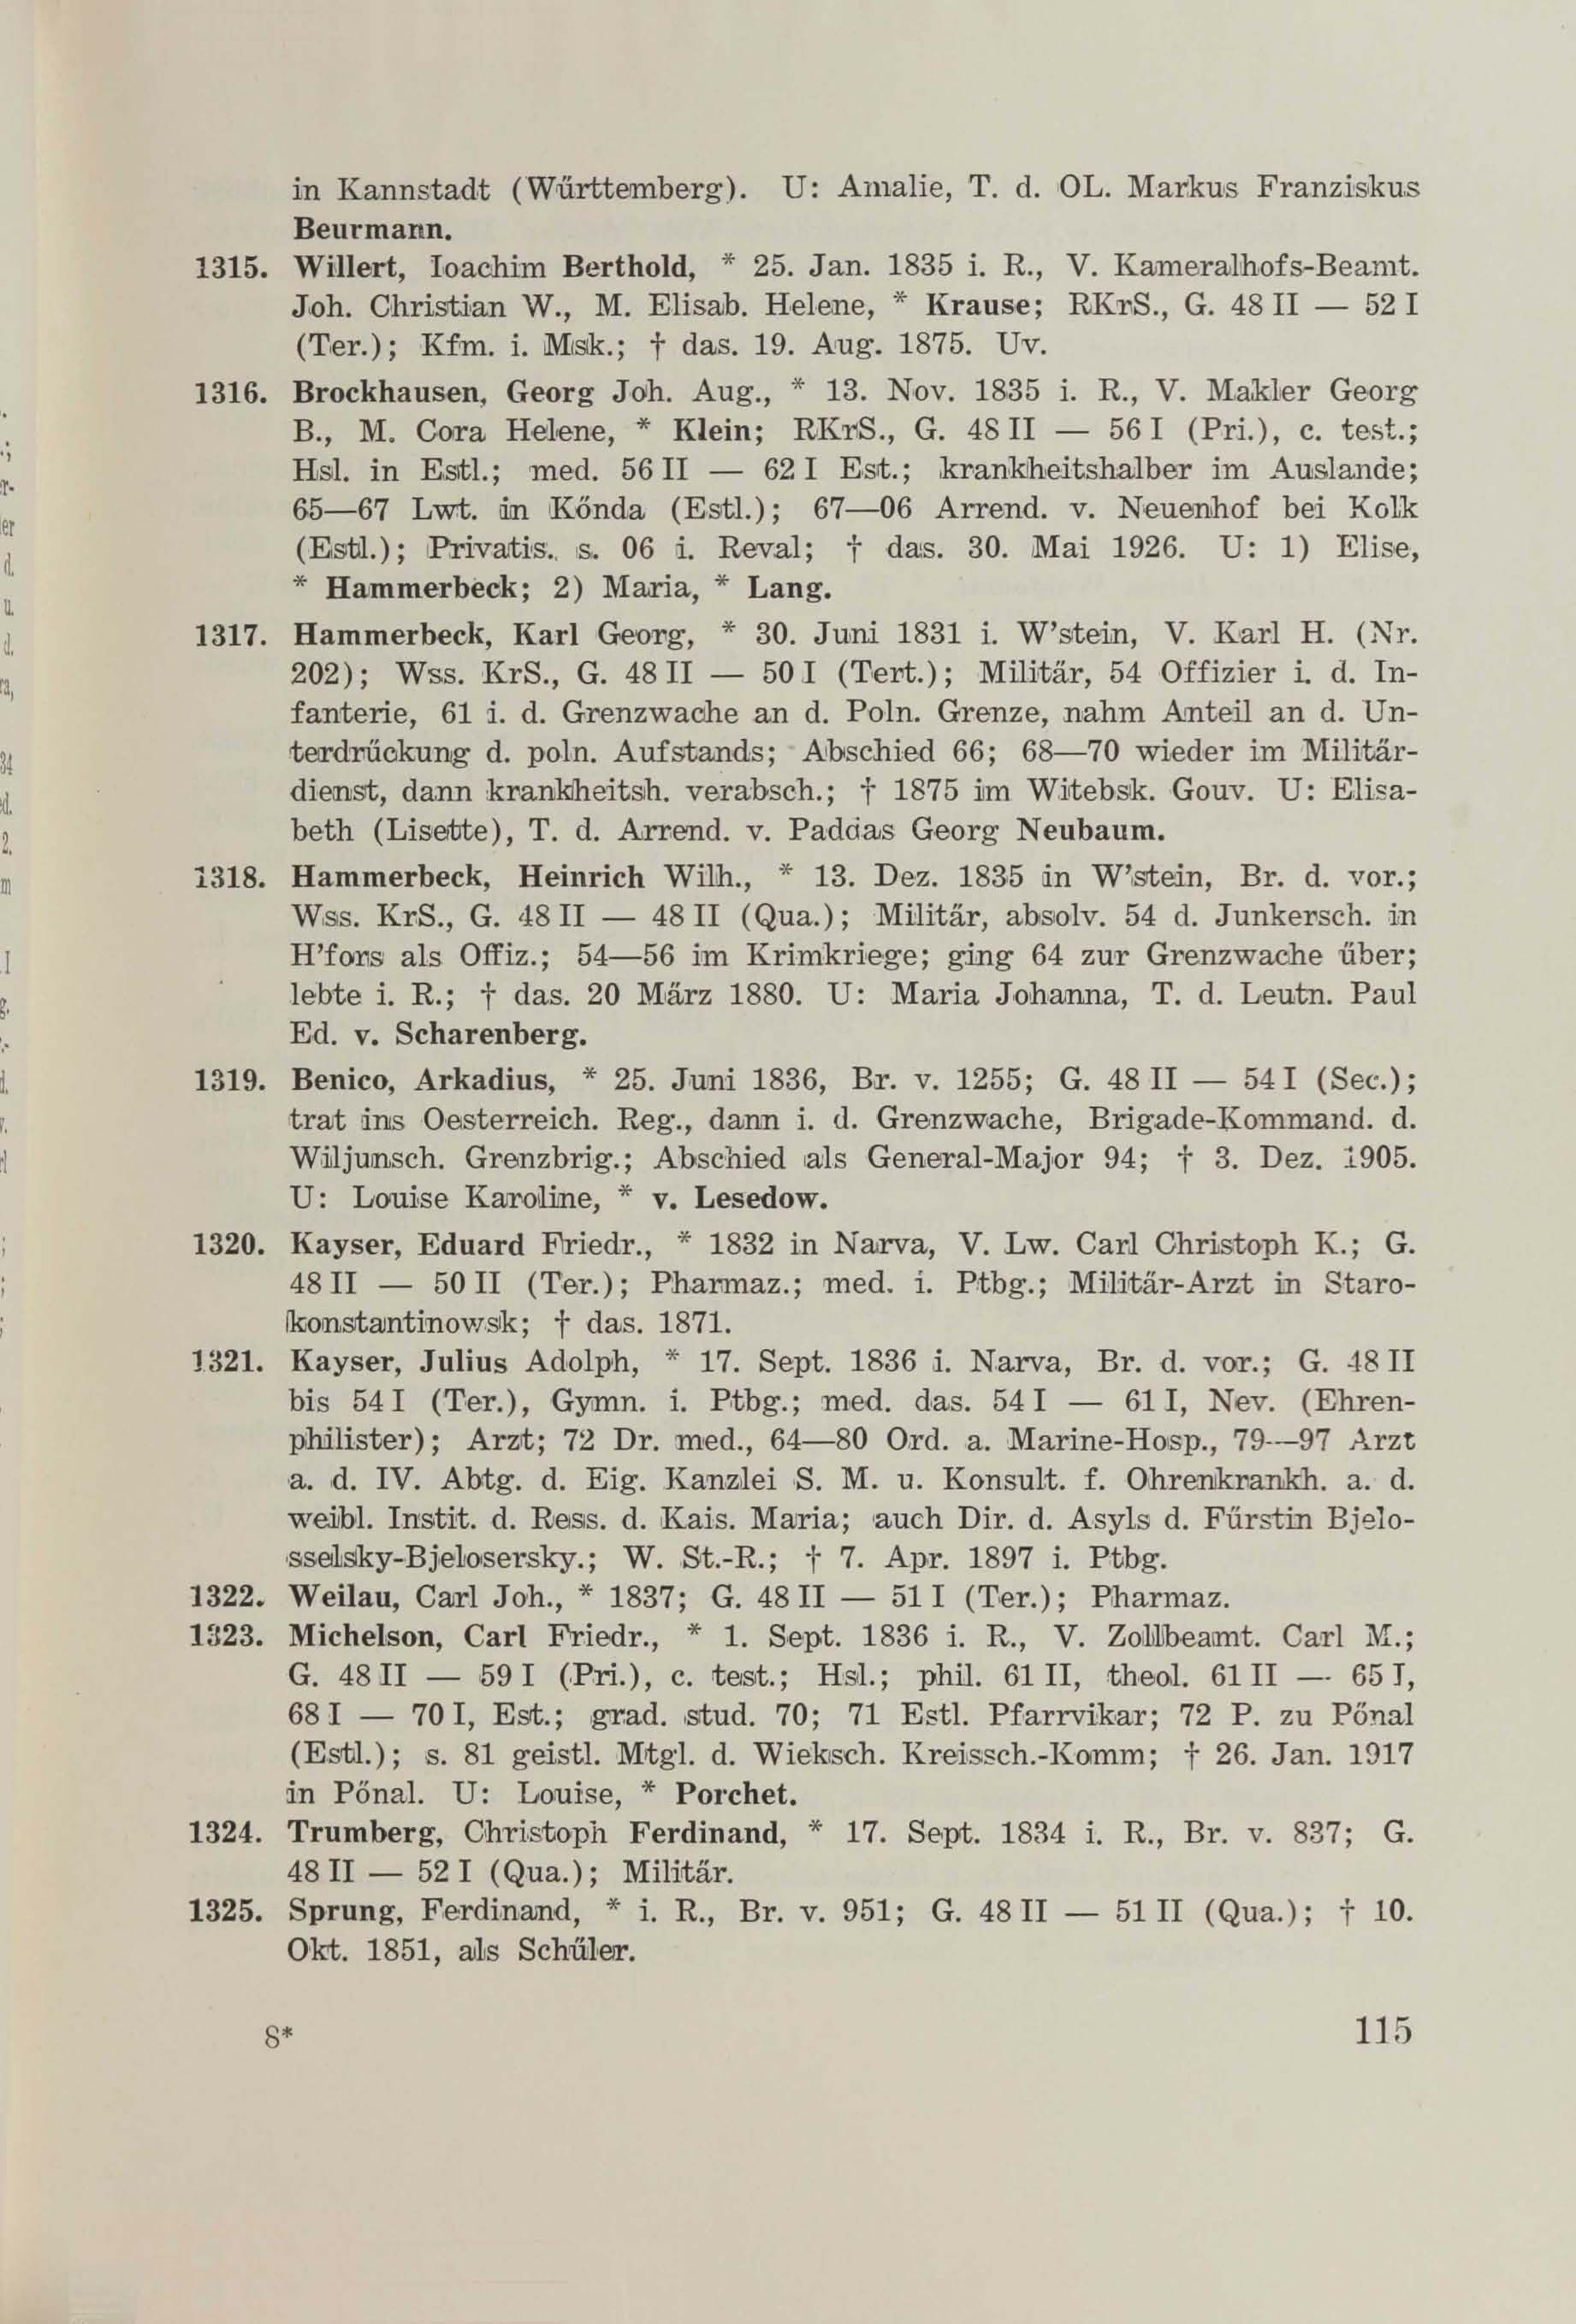 Schüler-Verzeichnis des Revalschen Gouvernements-Gymnasiums 1805–1890 (1931) | 125. (115) Haupttext